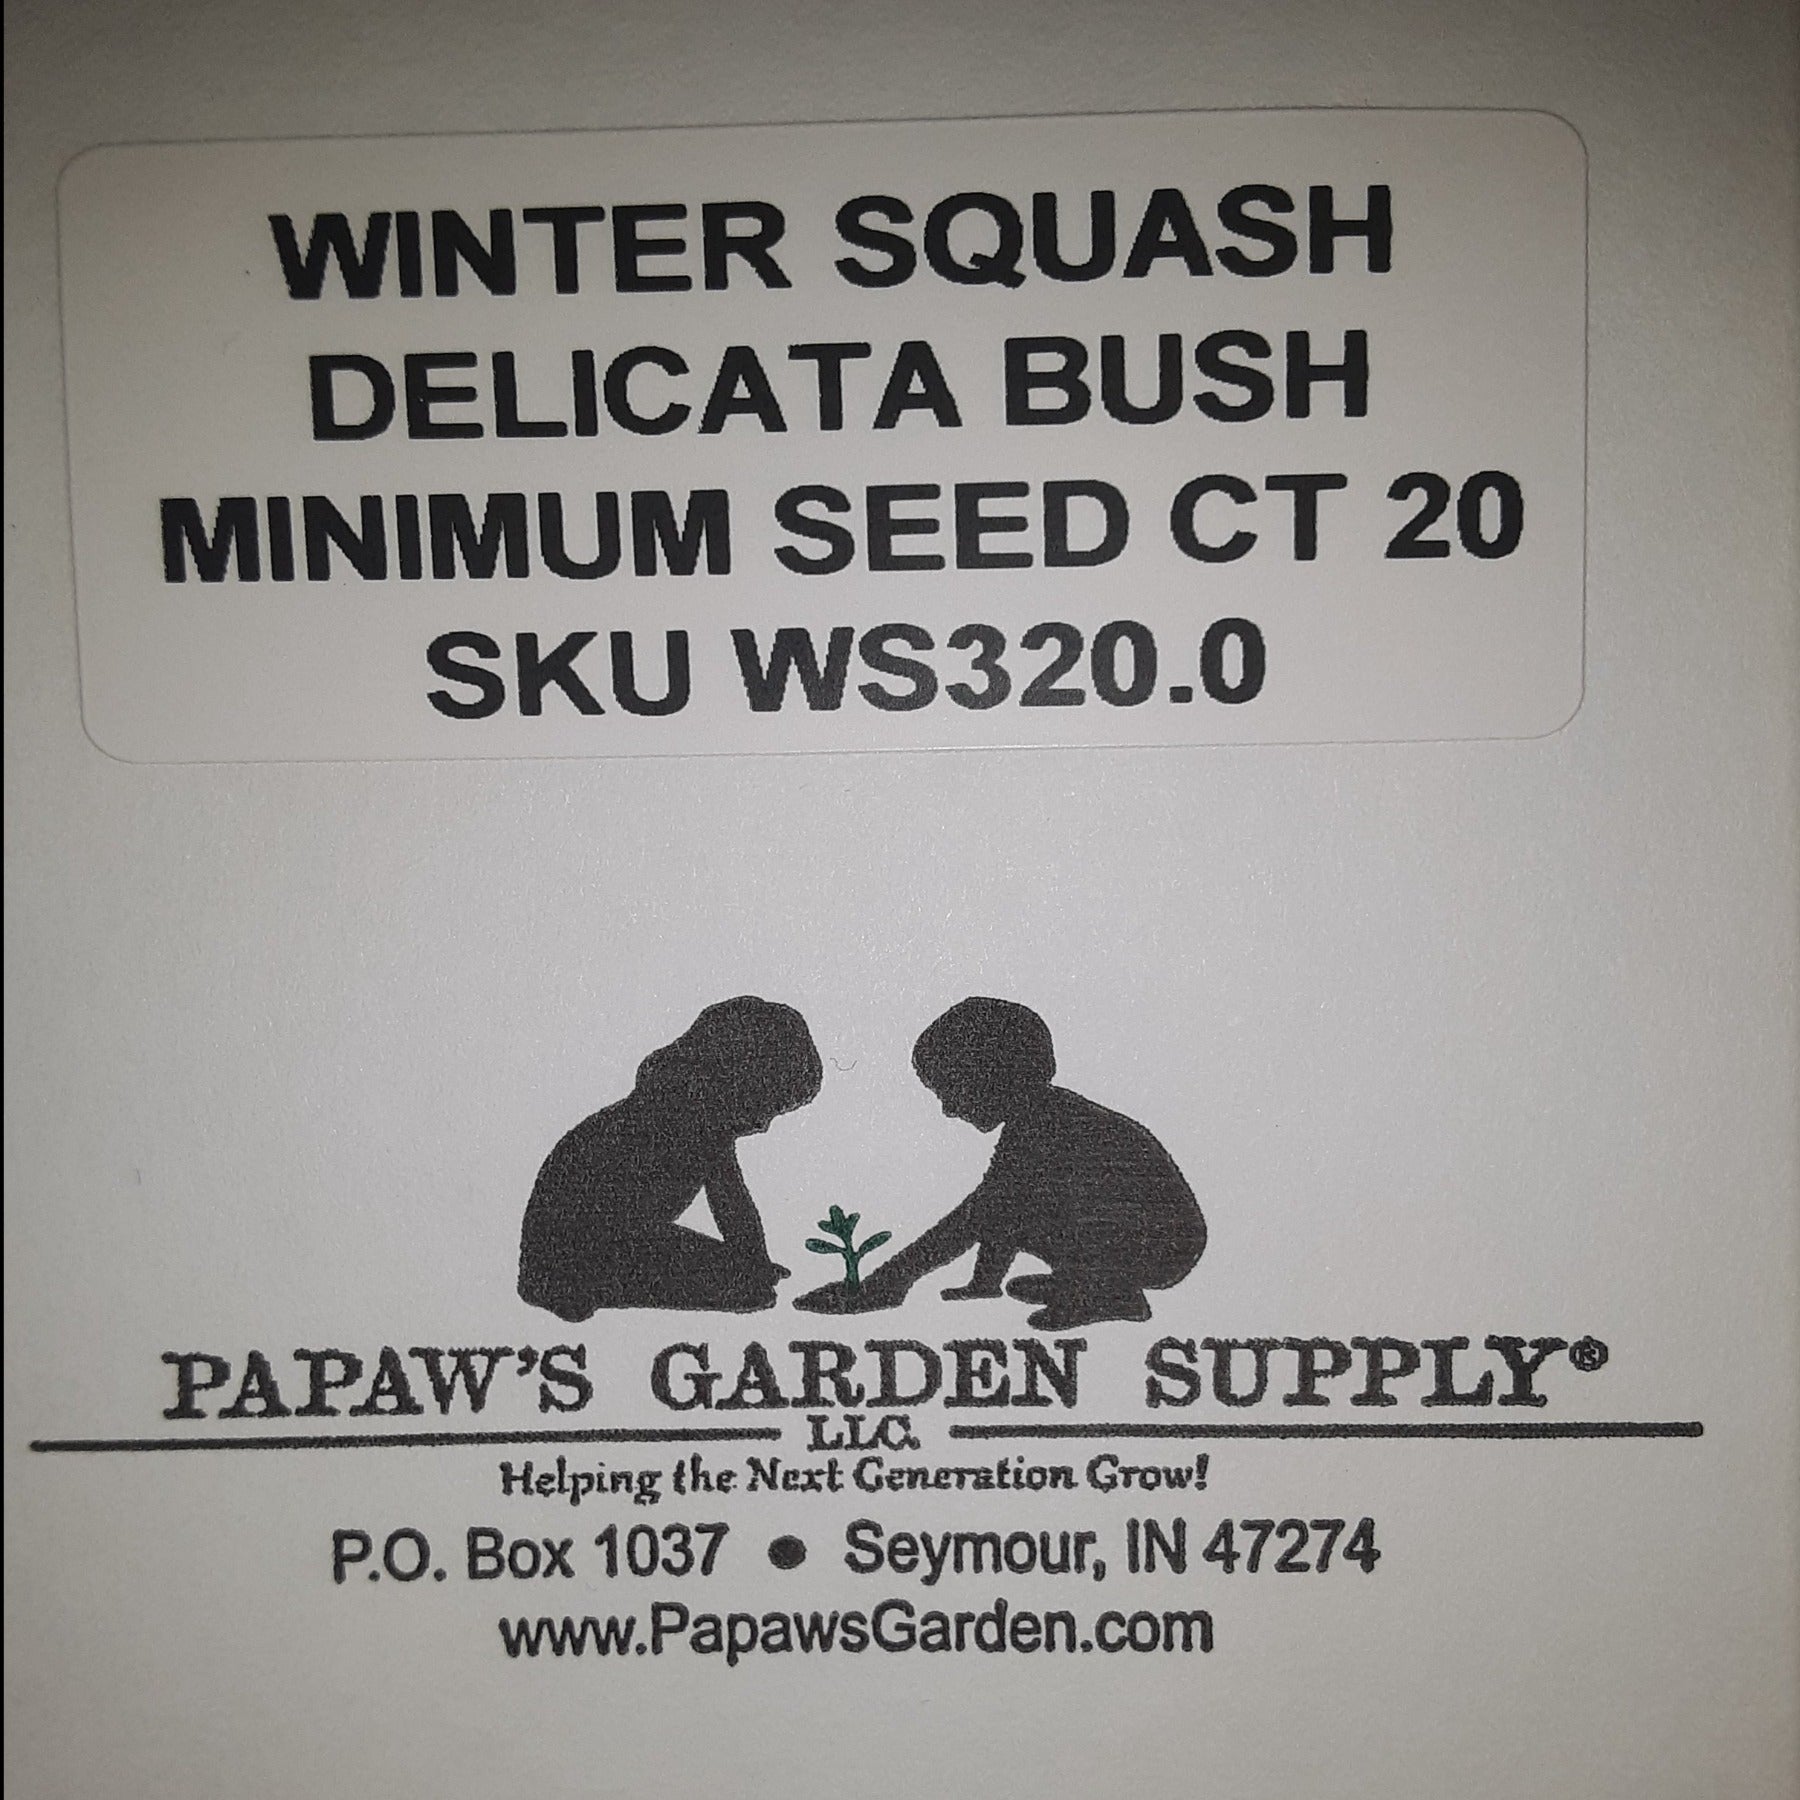 Delicata Bush Winter Squash Seeds